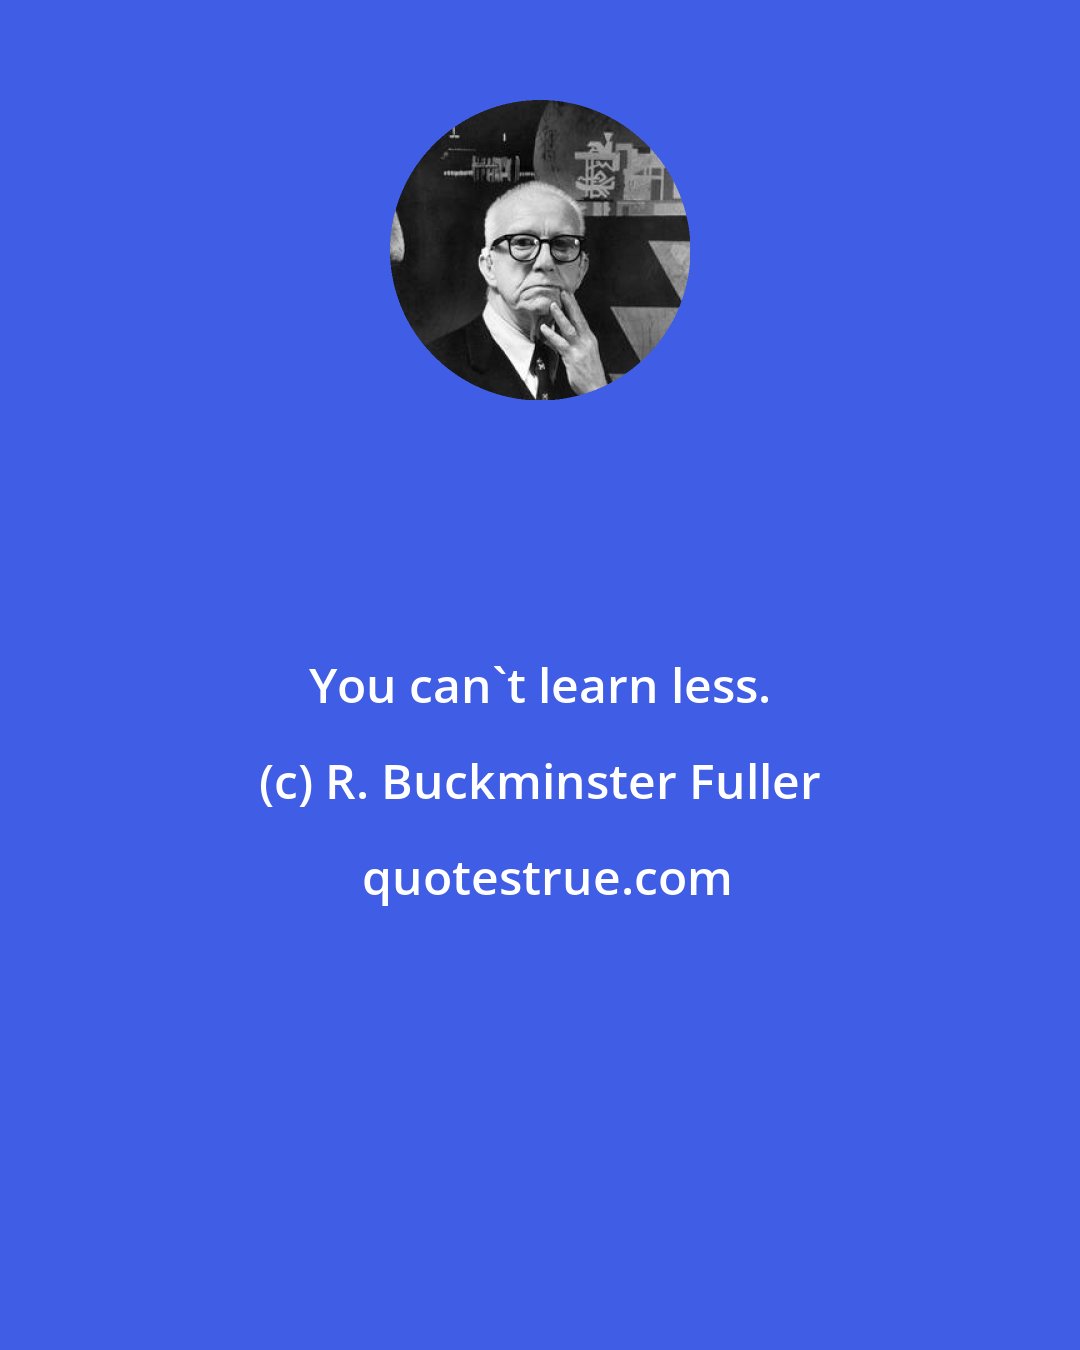 R. Buckminster Fuller: You can't learn less.